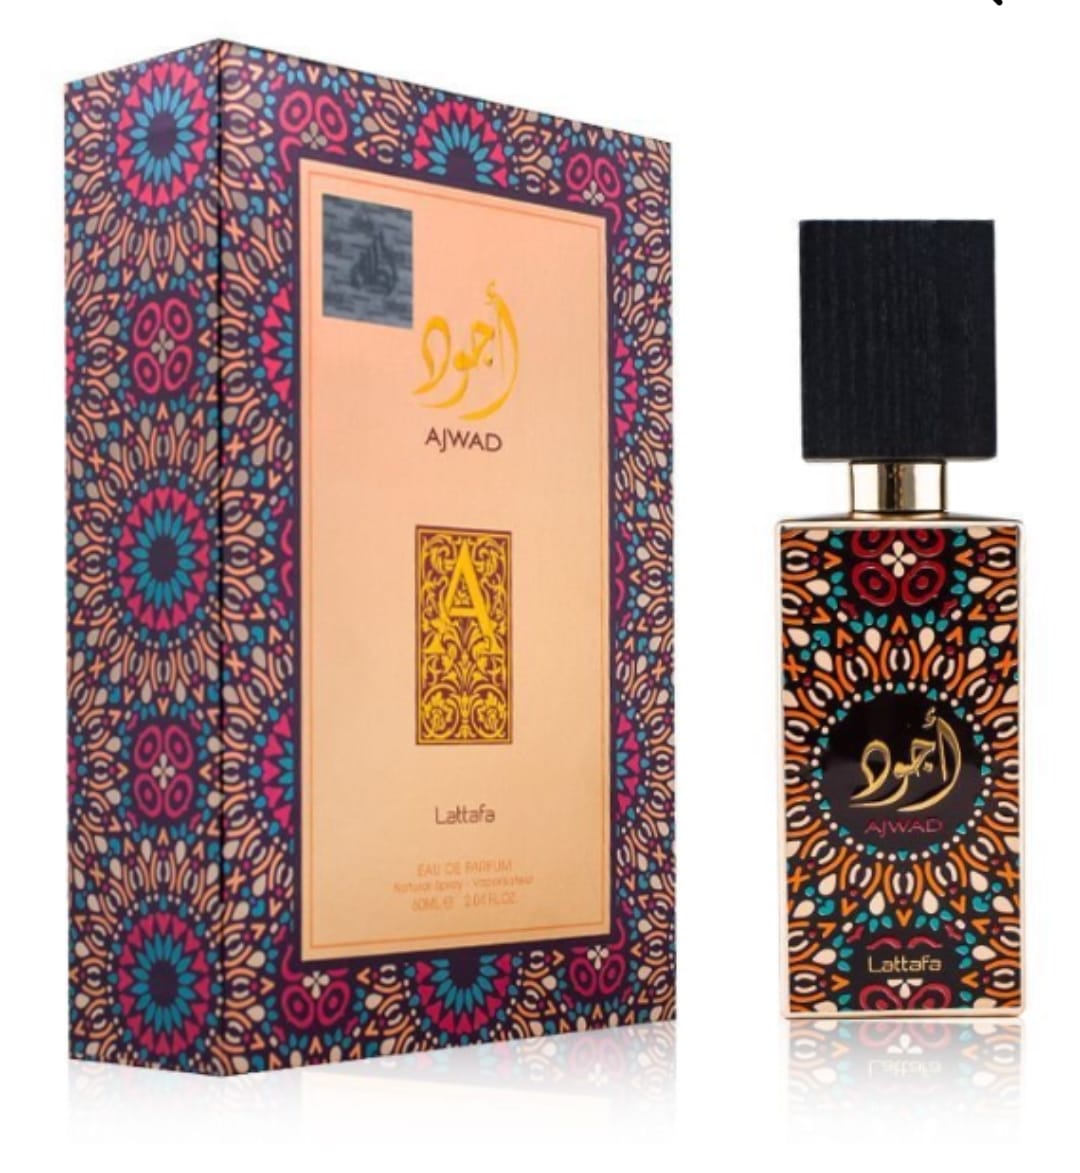 Eau de parfum Ajwad 60ml Lattafa